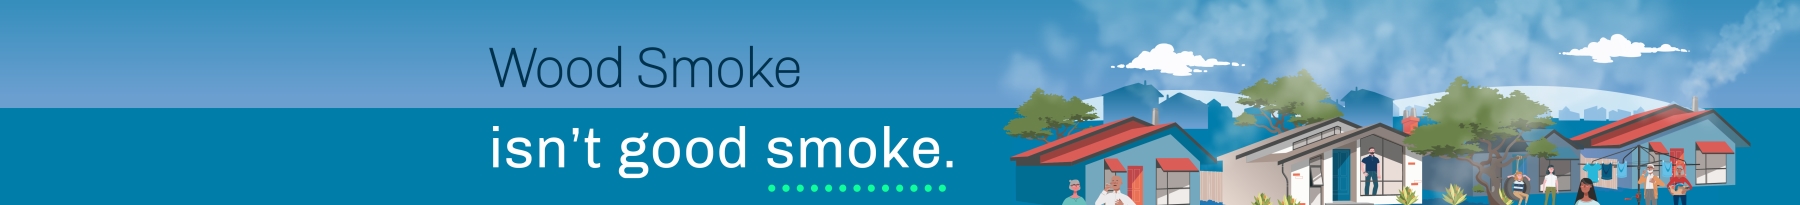 Woodsmoke isn't good smoke